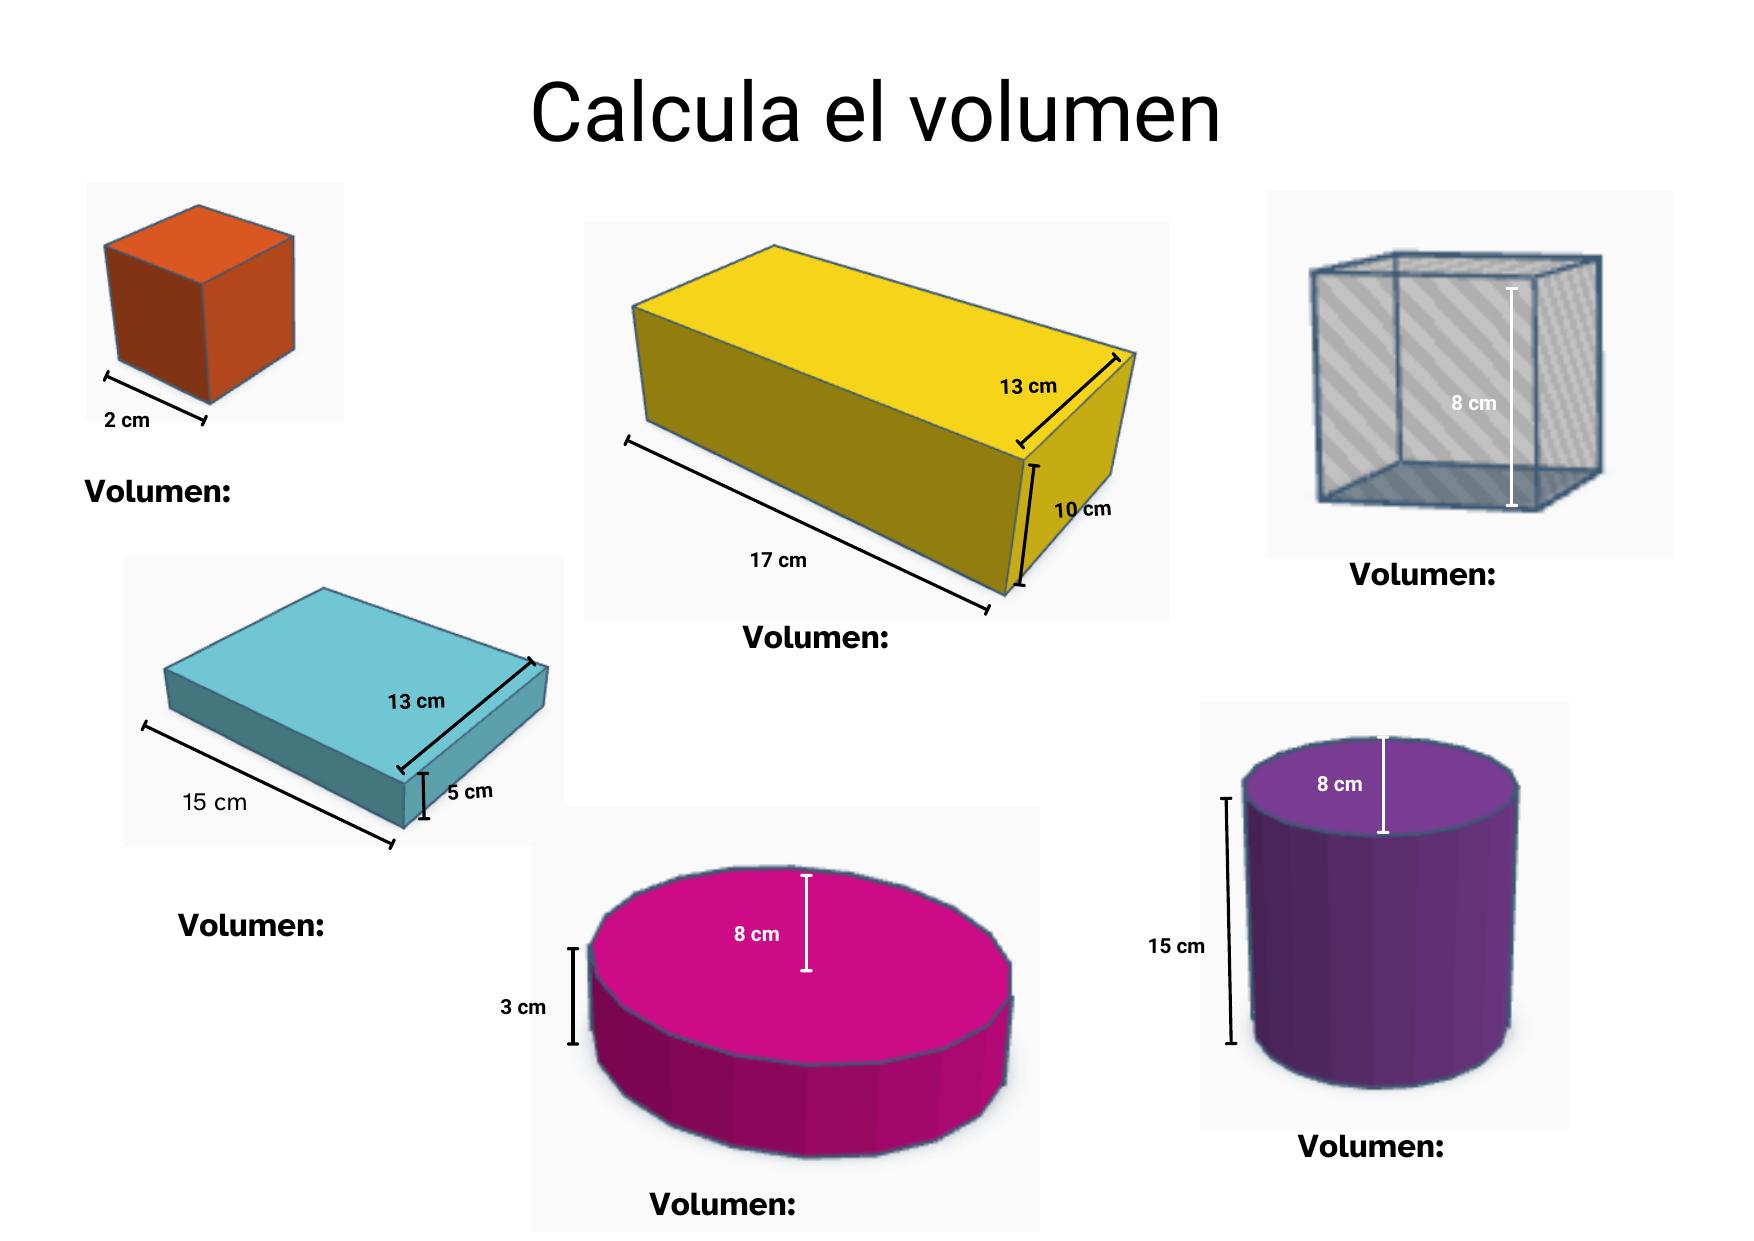 imagen perteneciente a la segunda página del documento PDF 'Calcula el volumen'